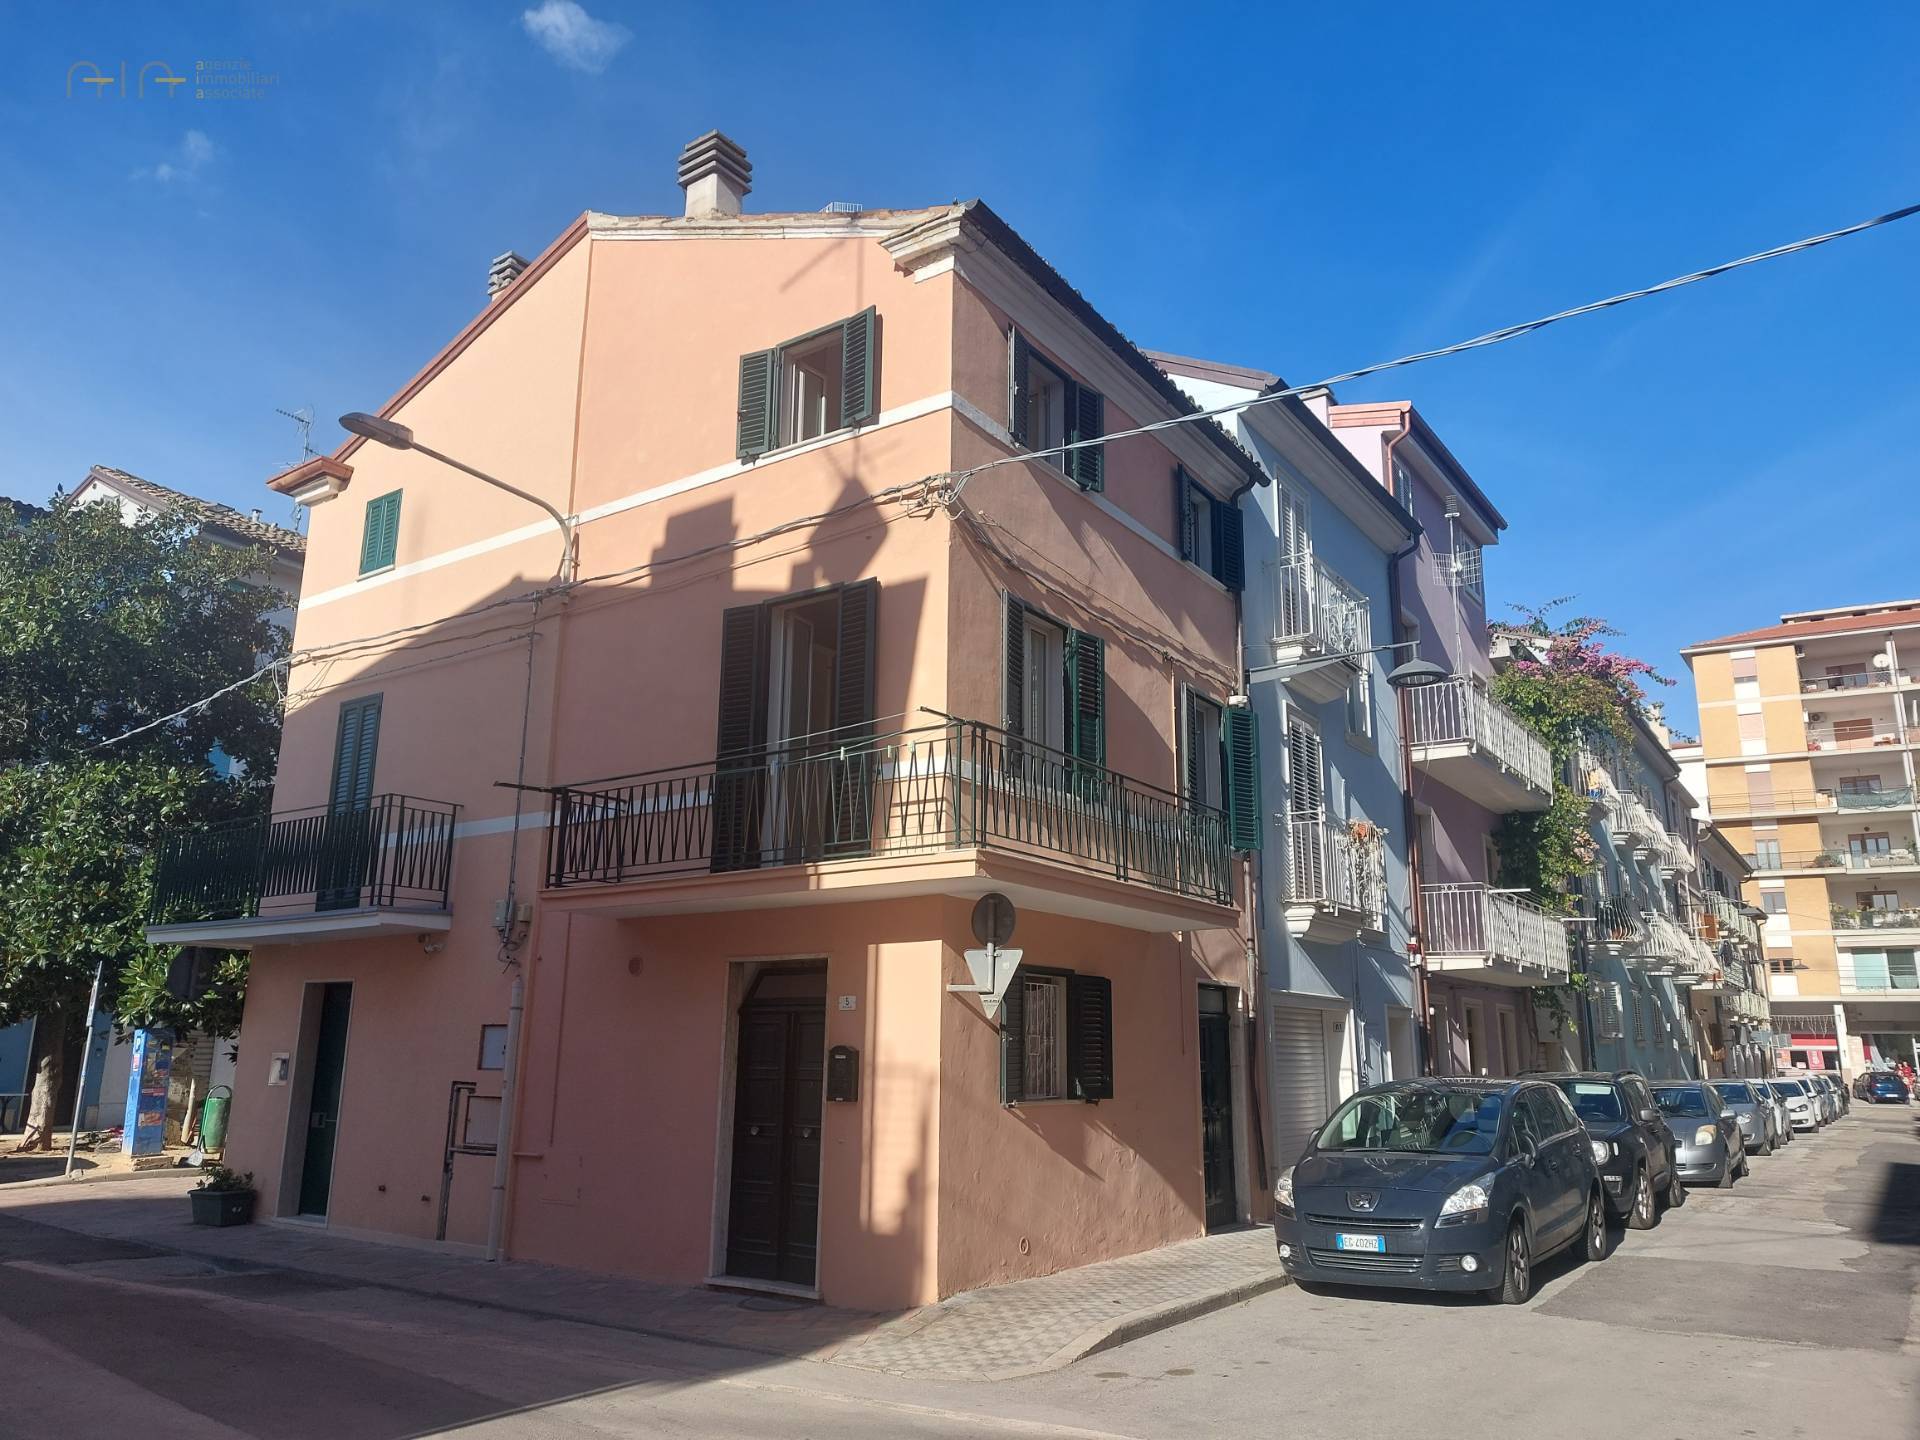 Soluzione Indipendente in vendita a San Benedetto del Tronto, 3 locali, zona Località: Centralissima, prezzo € 200.000 | PortaleAgenzieImmobiliari.it